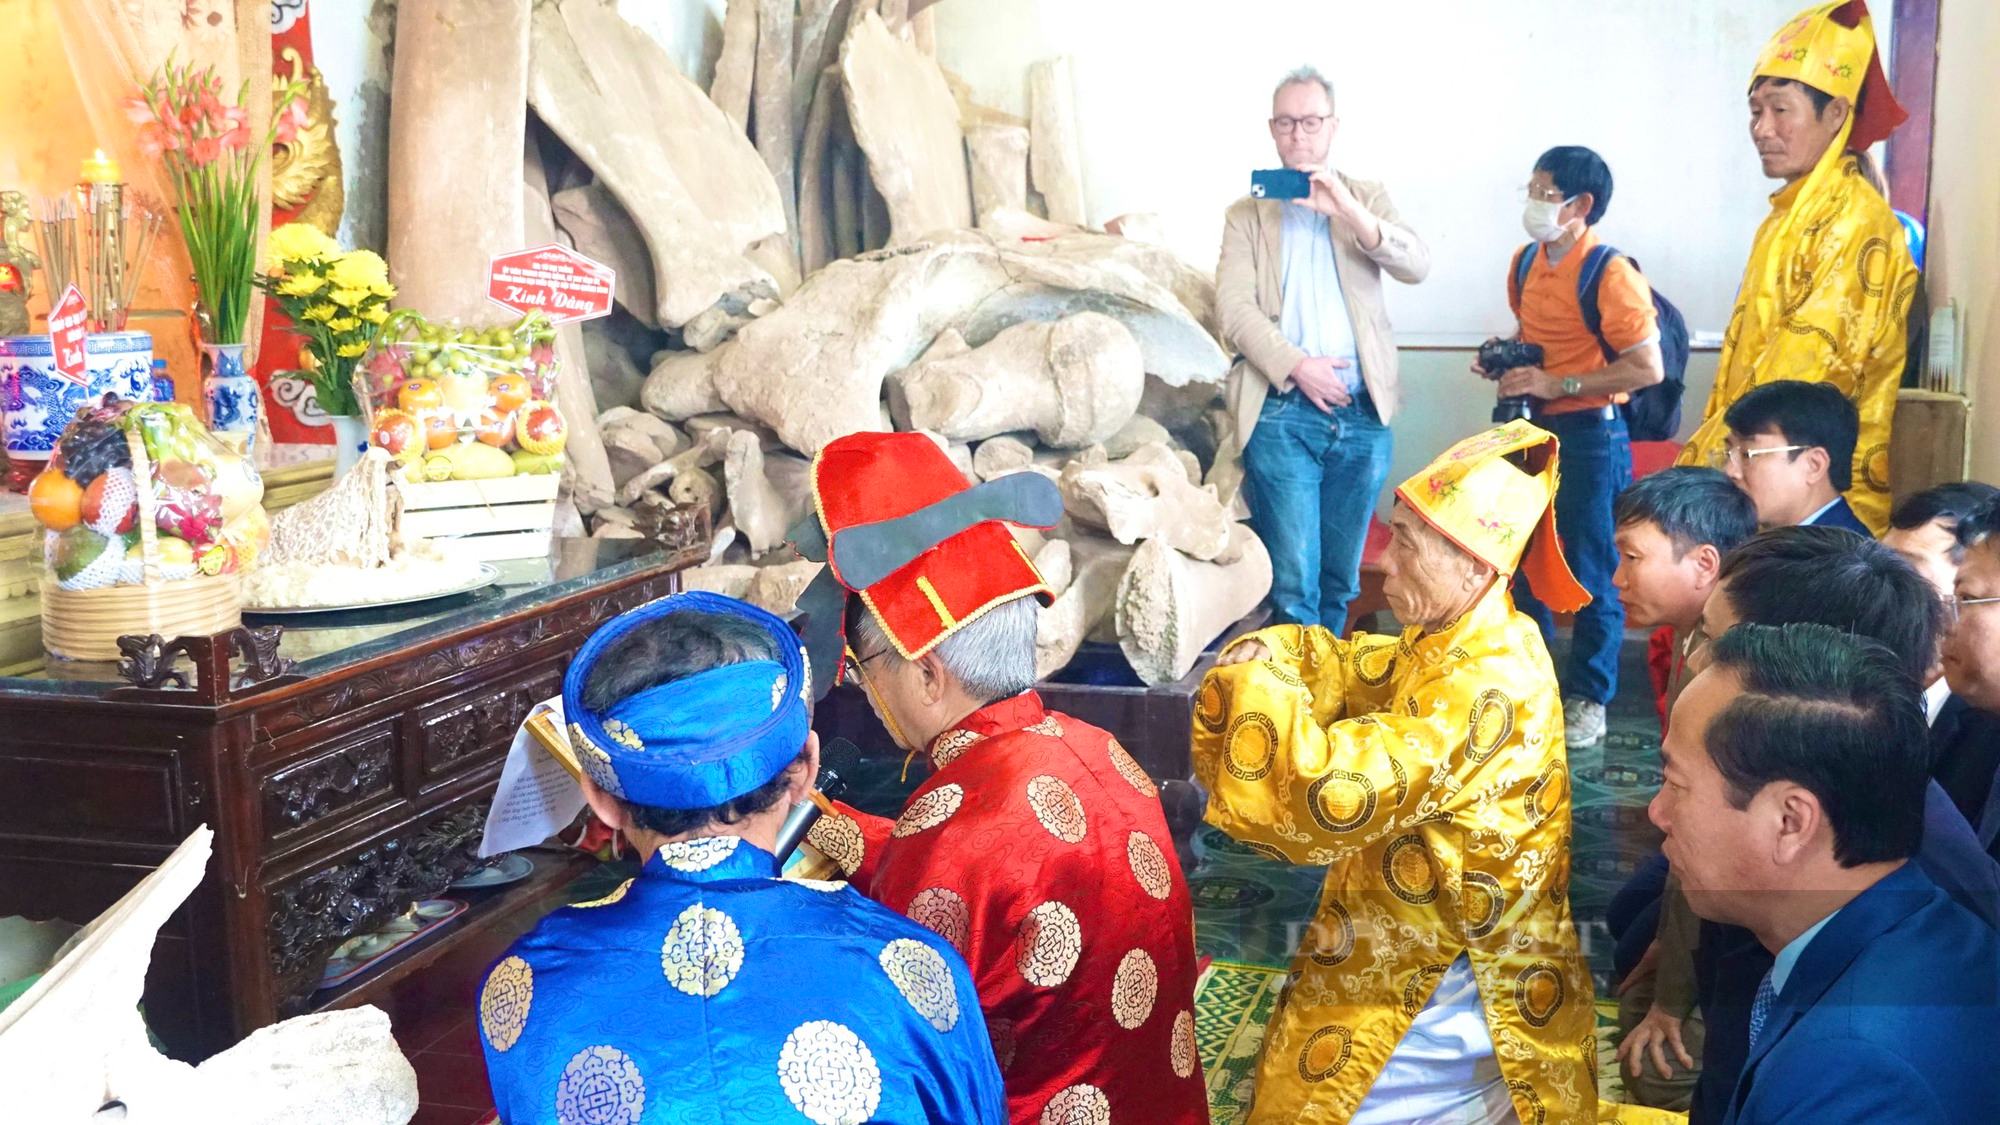 Lễ hội Cầu Ngư ở Quảng Bình: Cầu cho tôm, cá đầy khoang - Ảnh 4.